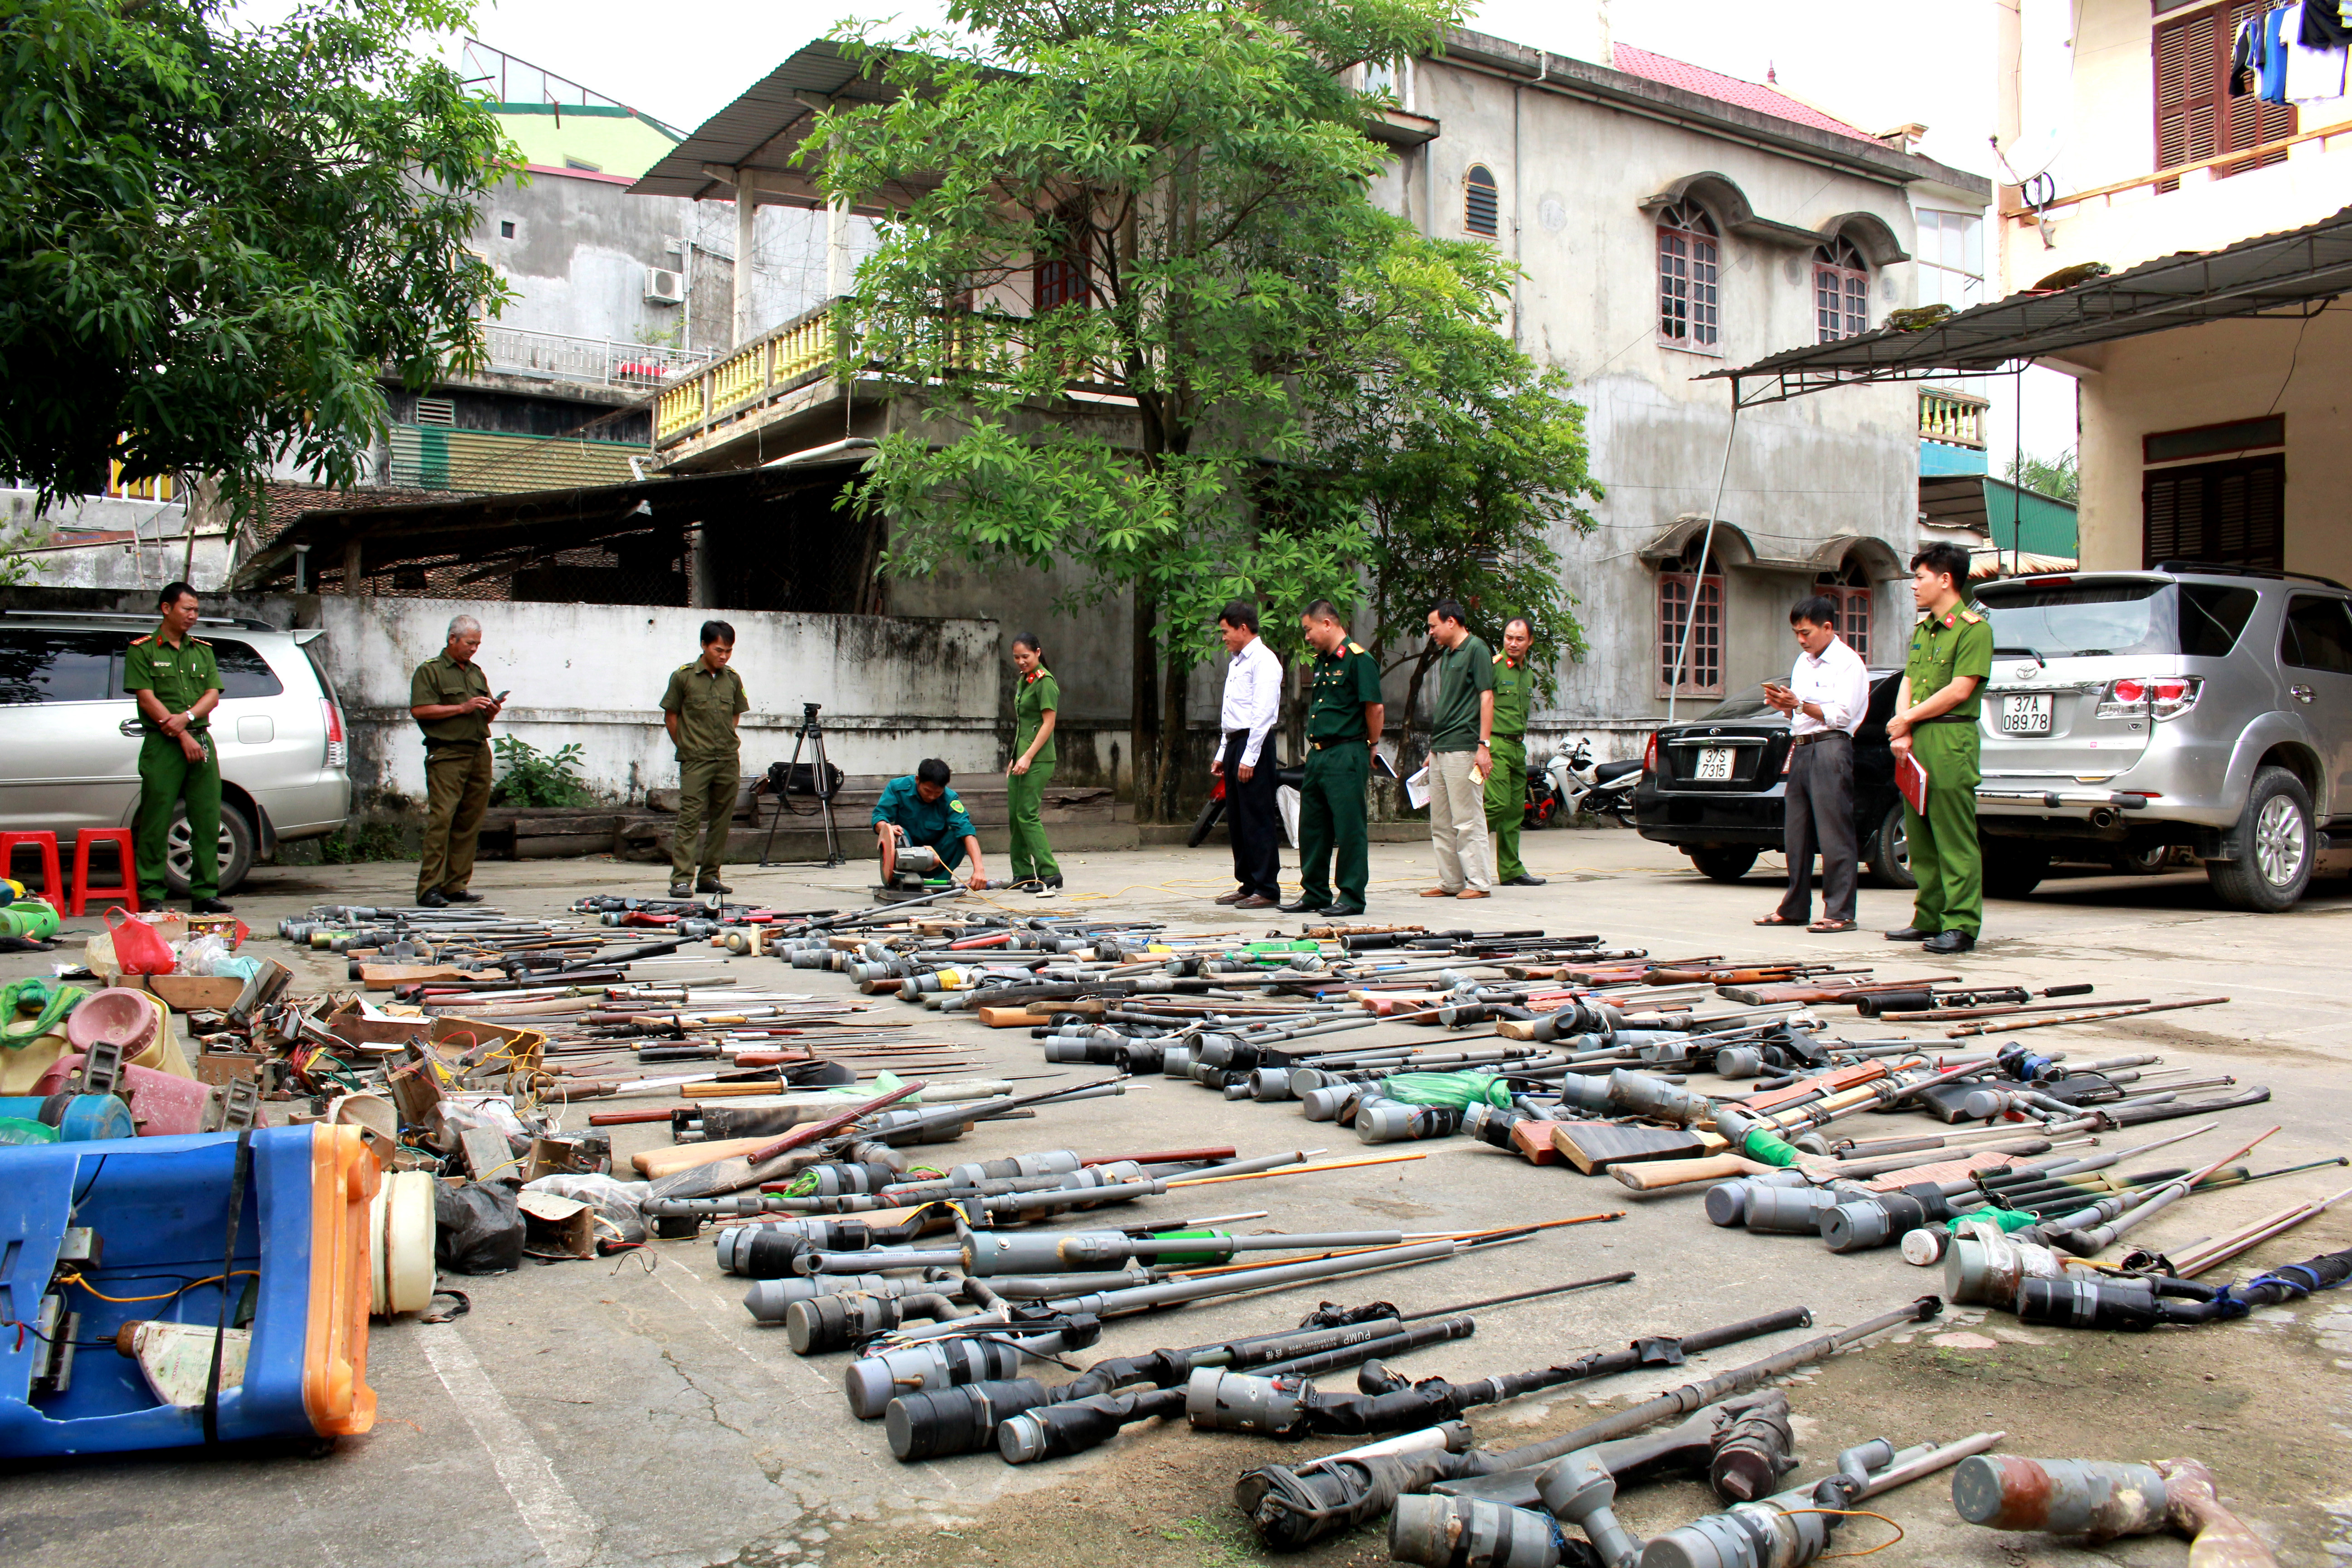 Hàng trăm khẩu súng tự chế được người dân giao nộp để cơ quan chức năng tiêu hủy. Ảnh: Hoàng Phi